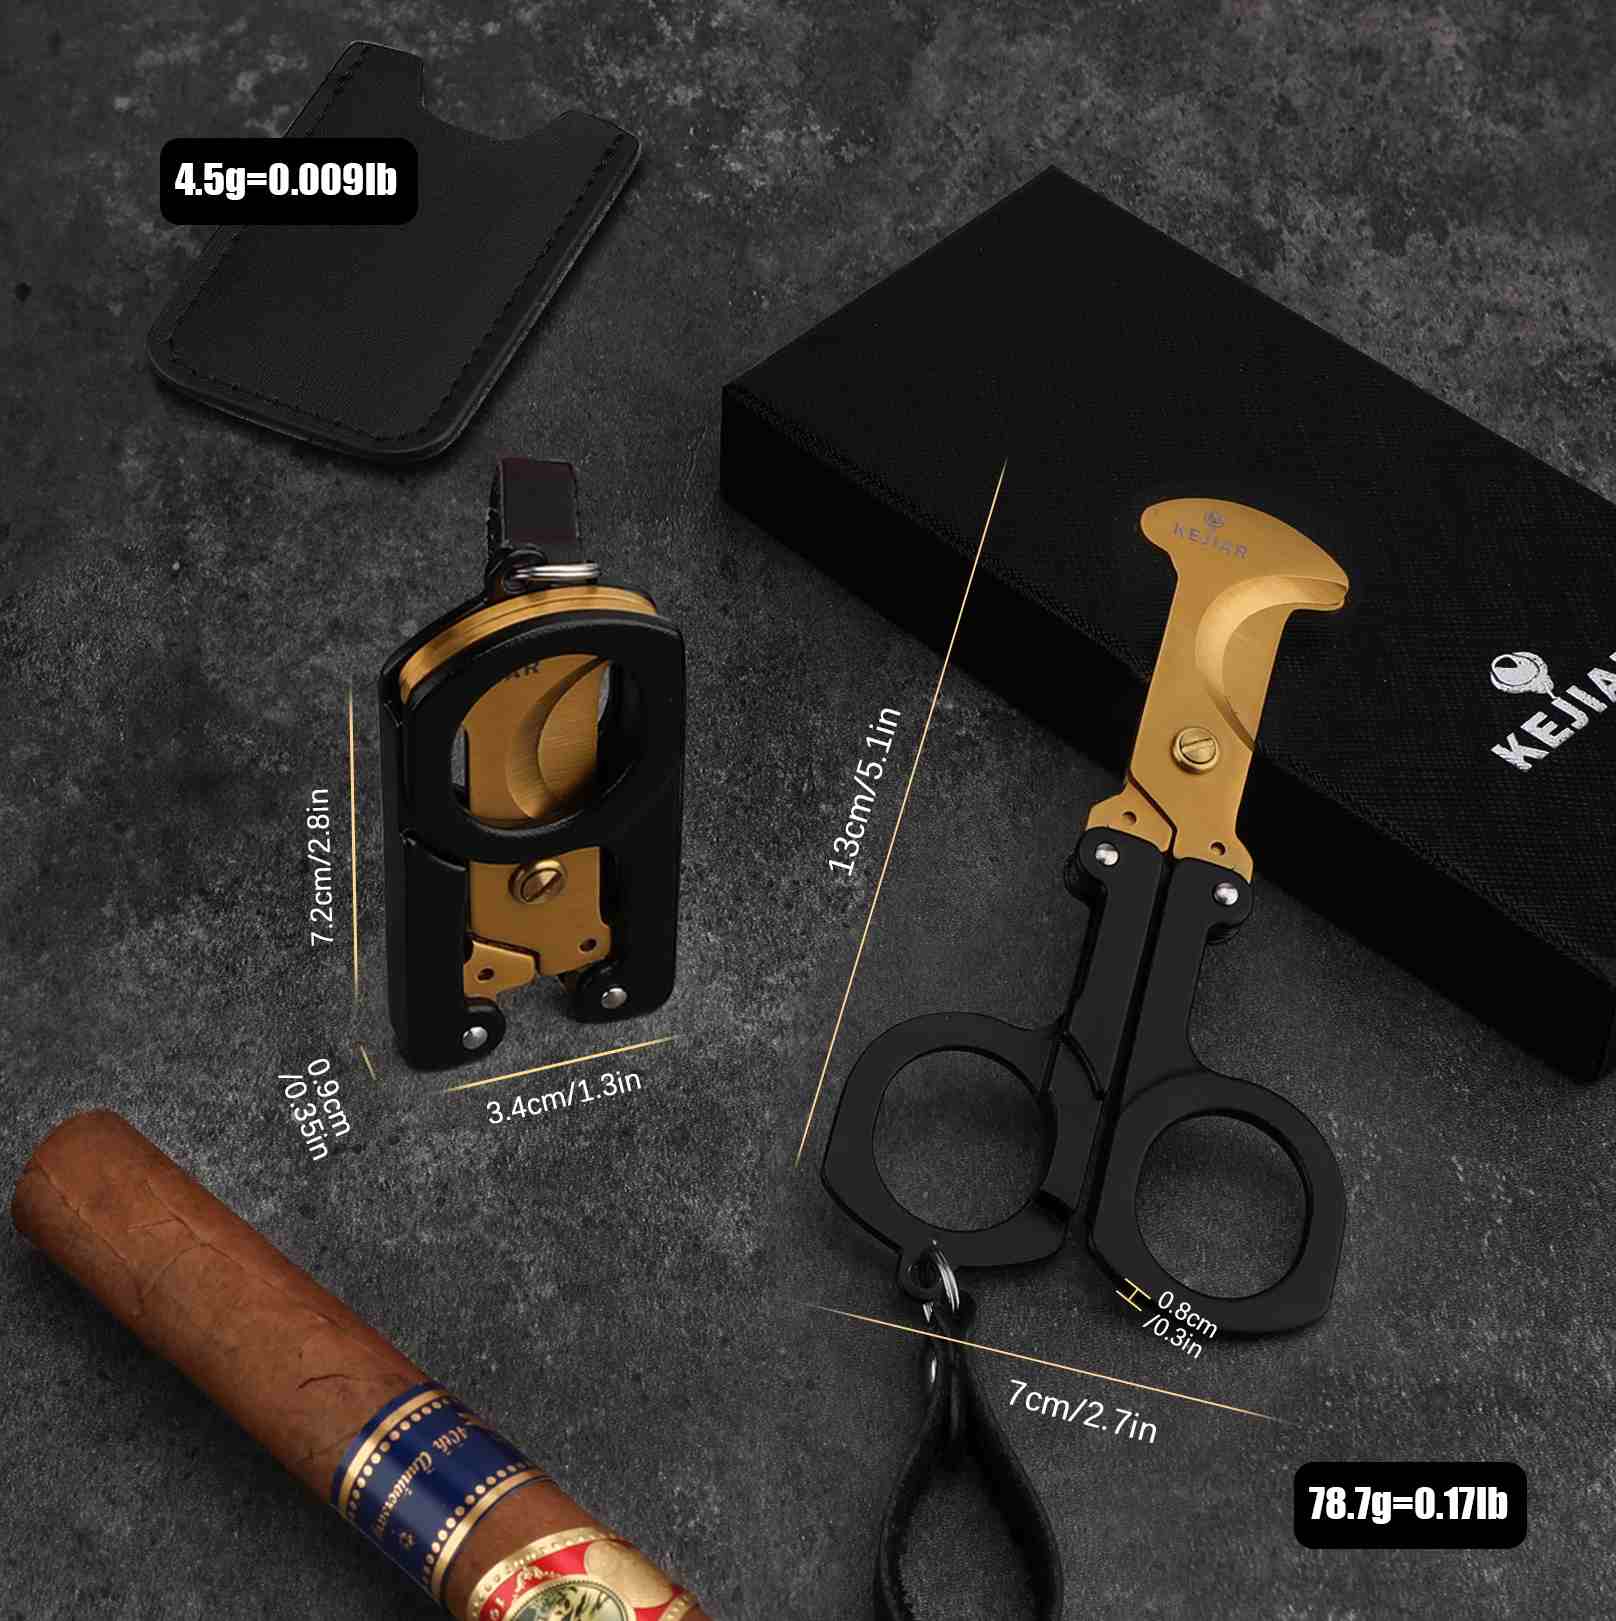 cigar cutter factory